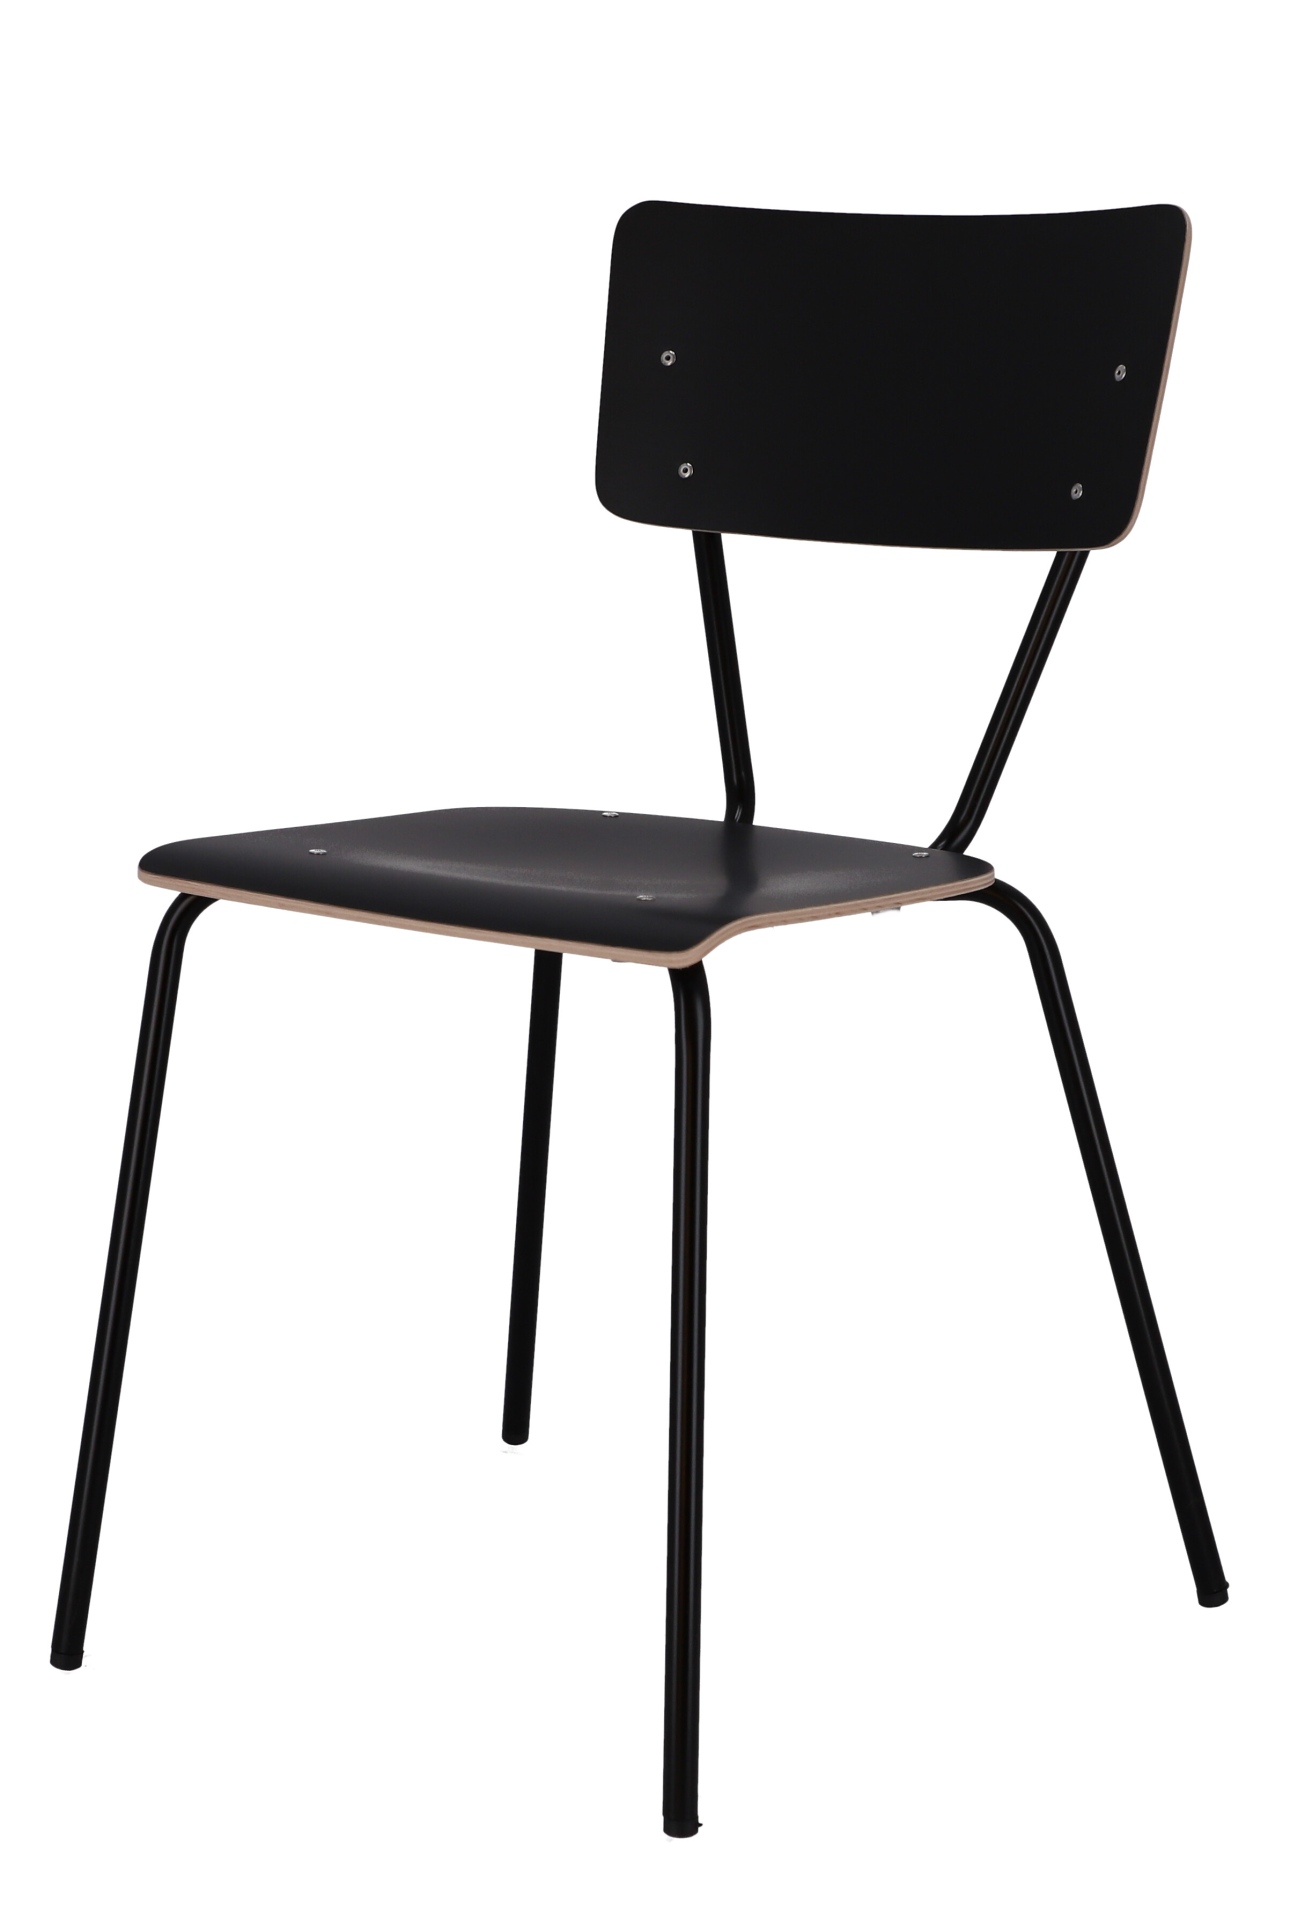 Der schlichte Stuhl Clio wurde aus Metall gefertigt und besitzt eine schwarze Farbe. Er ist eine Produkt der Marke Jan Kurtz.